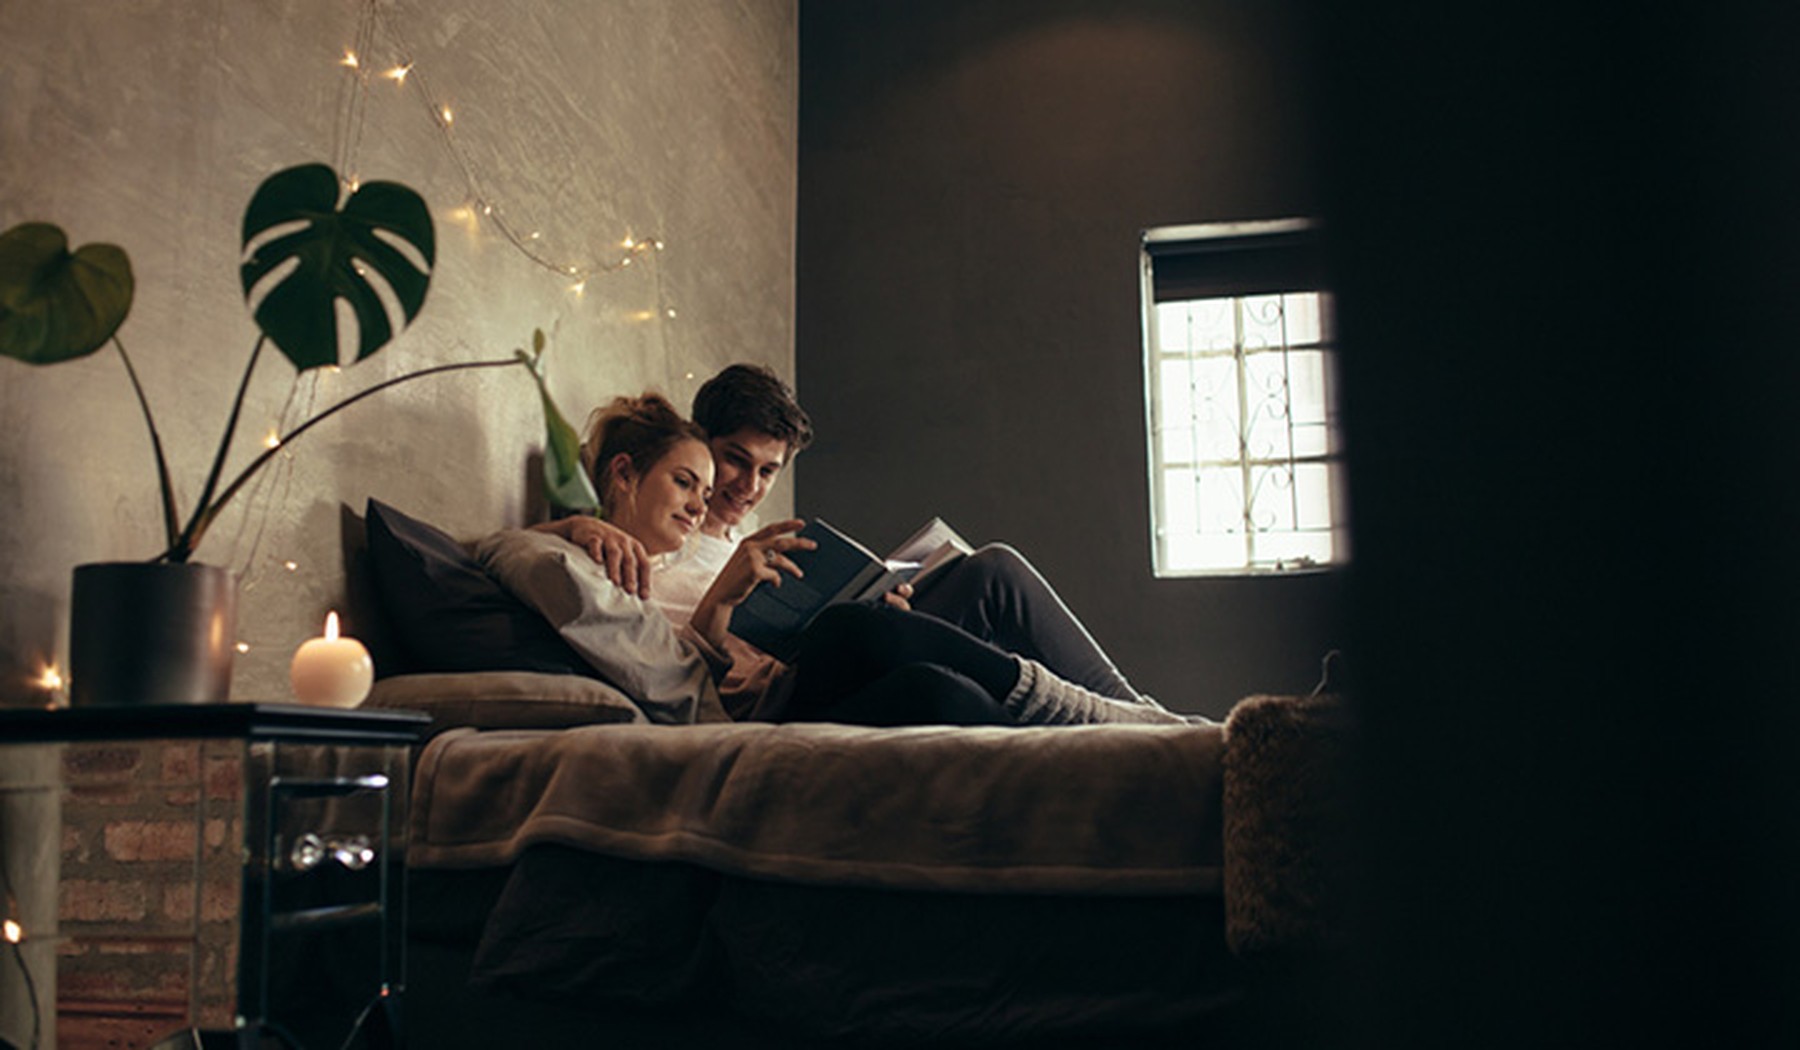 Pareja joven de chico y chica tumbados en una cama leyendo juntos un libro. La habitación está iluminada por una vela y una guirnalda de lucecitas.